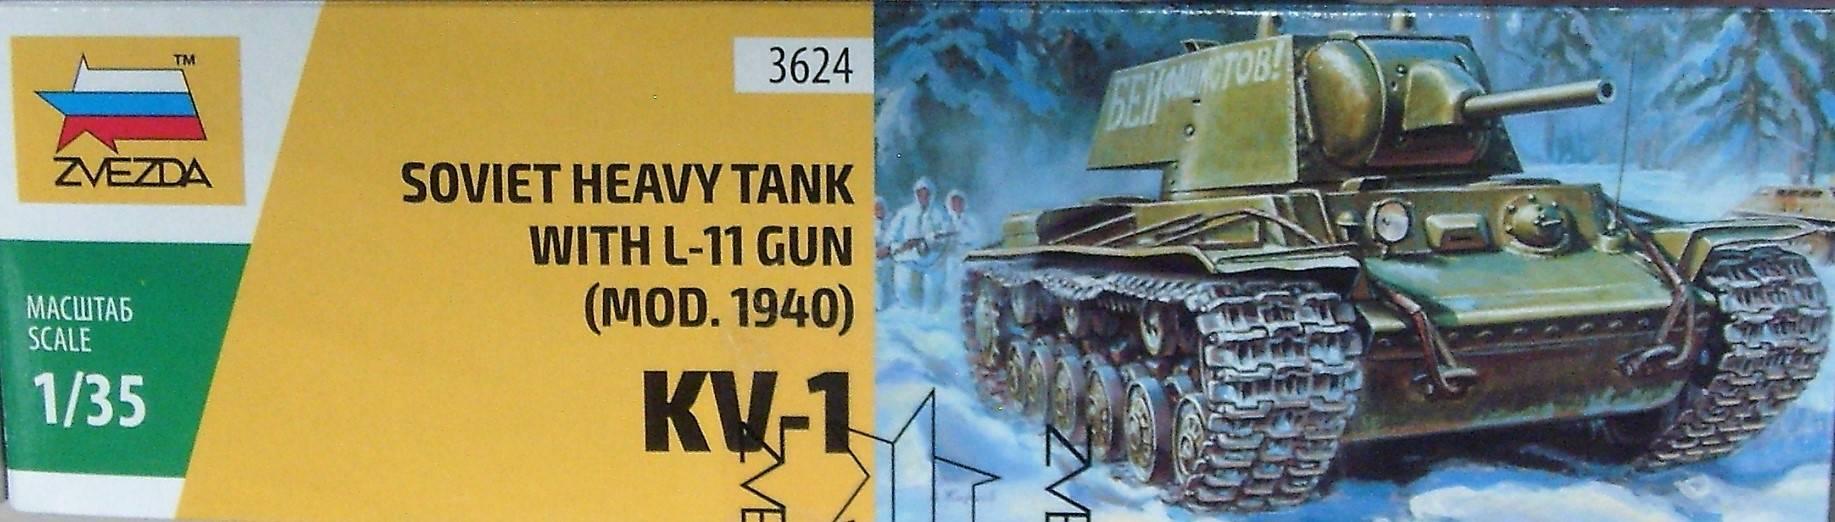 Иллюстрация 12 из 17 для Советский тяжелый танк КВ-1 модель 1940 г. с пушкой Л-11 (3624) | Лабиринт - игрушки. Источник: Соловьев  Владимир